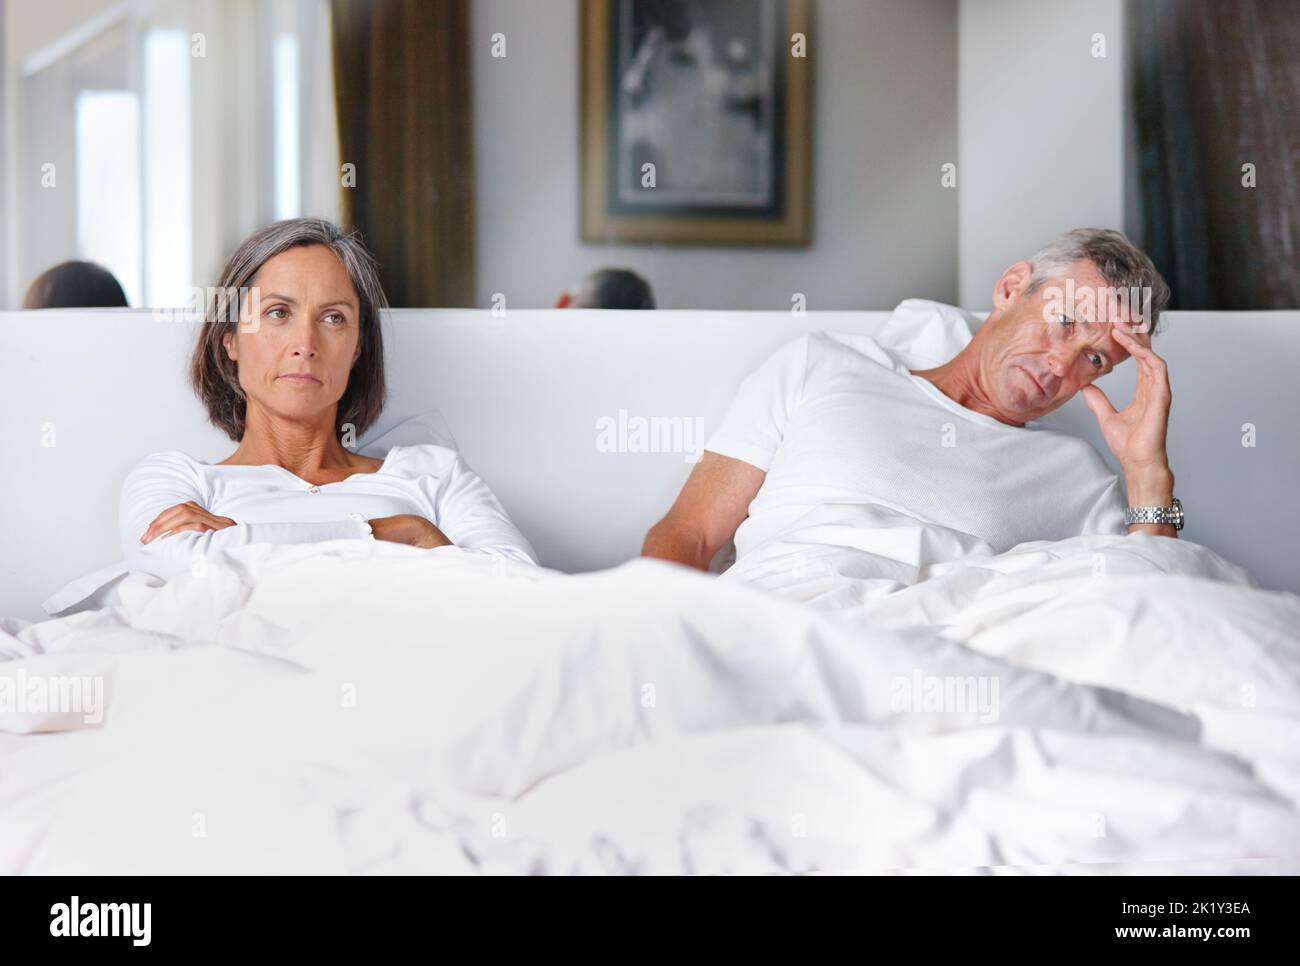 Sie sprechen nicht miteinander ... ein reifes Ehepaar verärgert miteinander im Schlafzimmer. Stockfoto